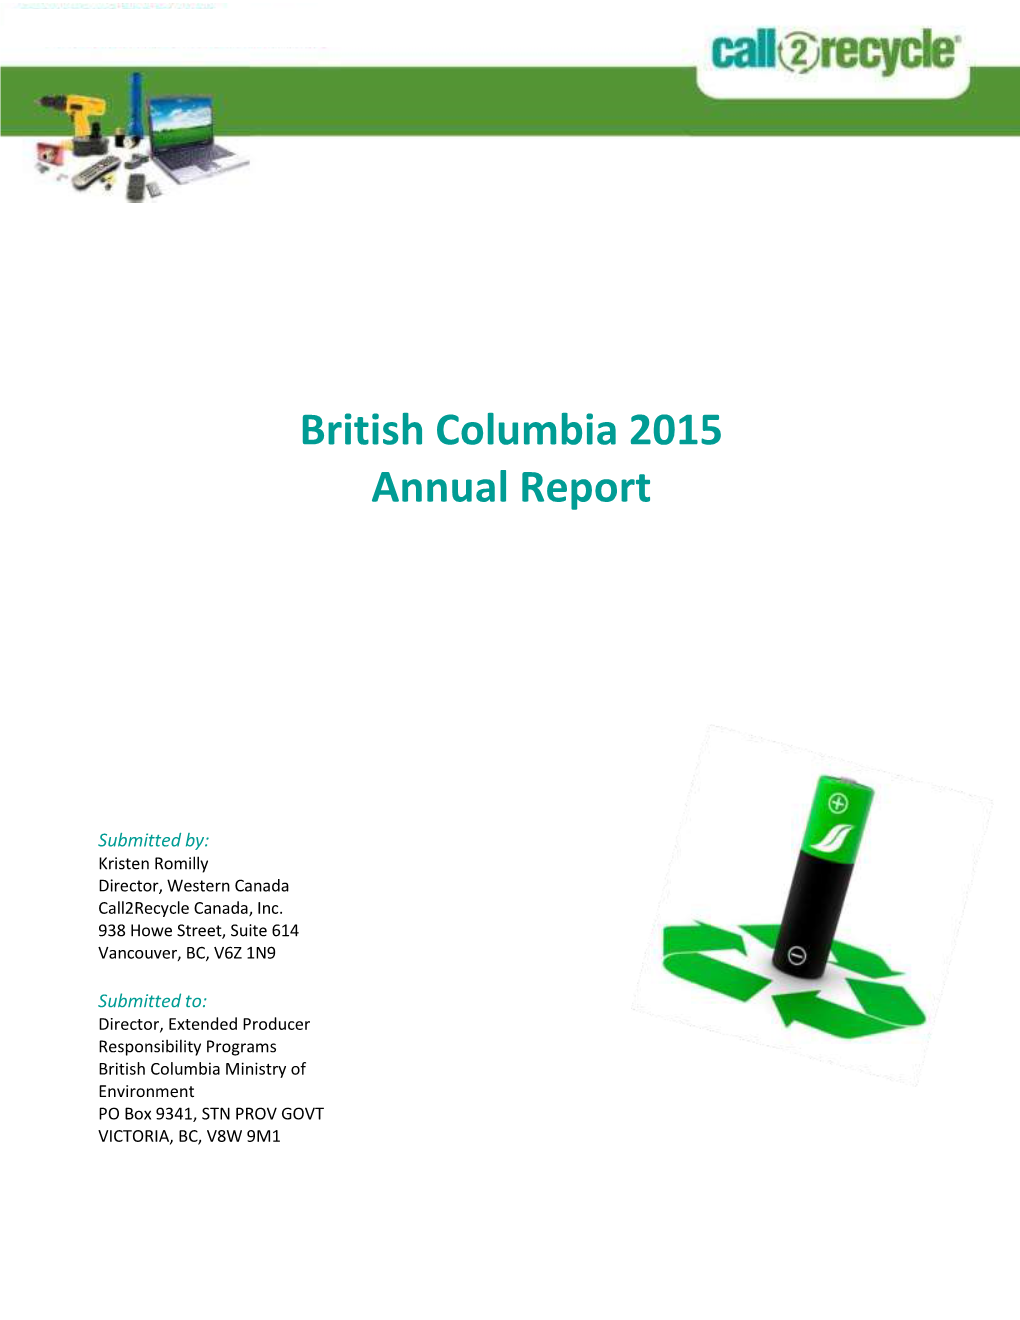 British Columbia 2015 Annual Report